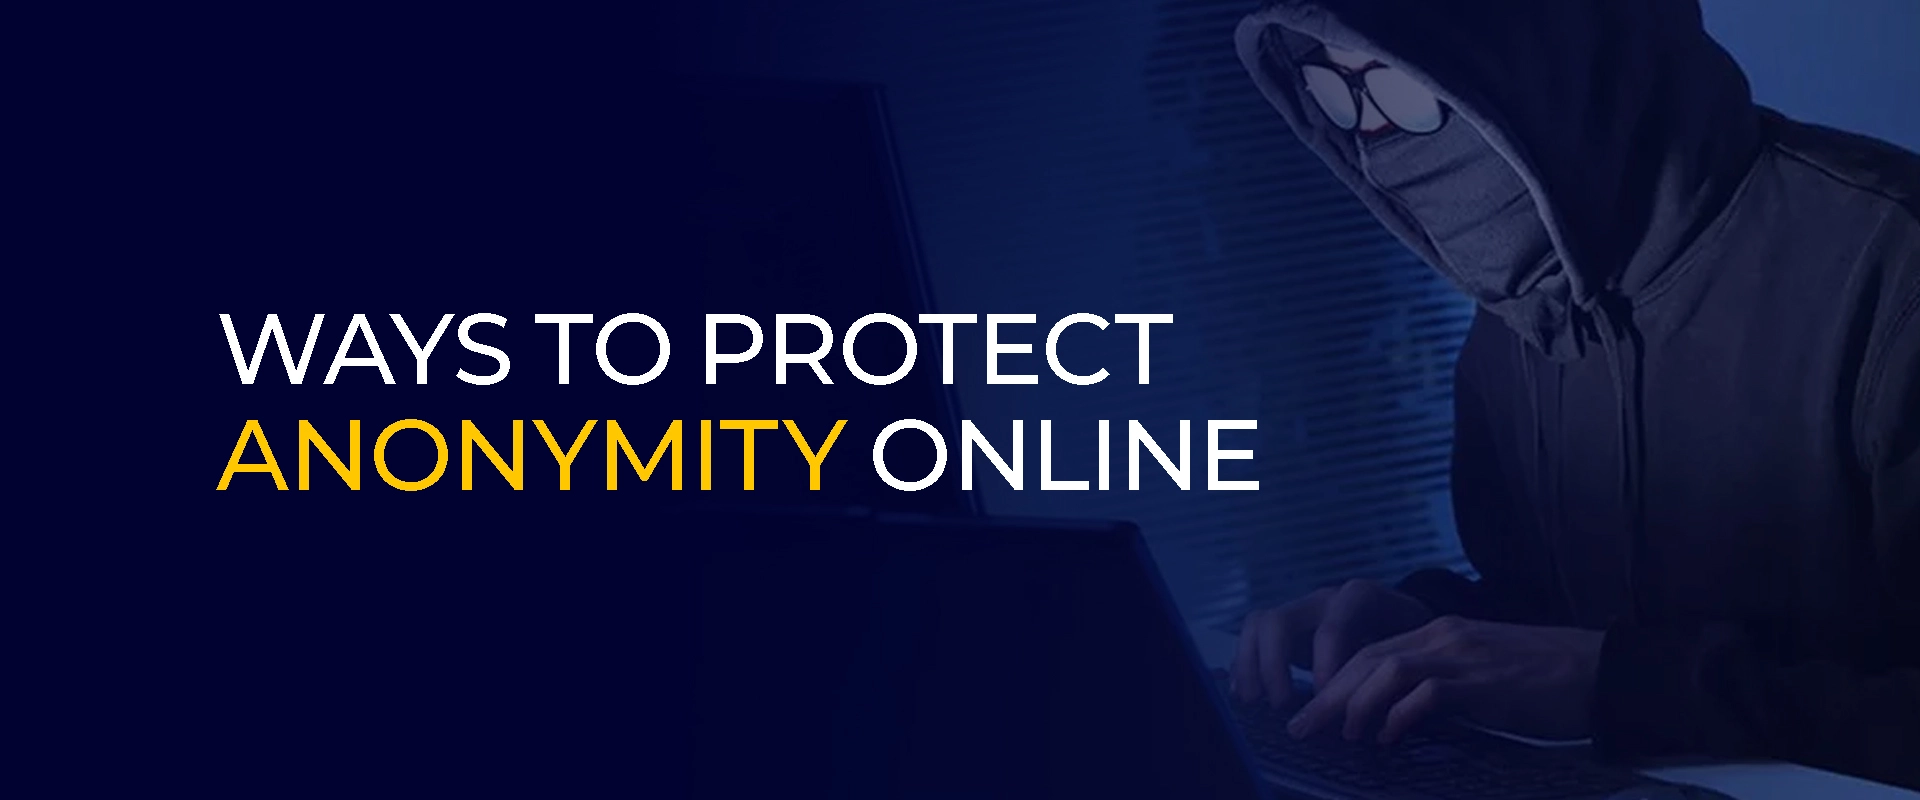 Formas de proteger el anonimato en línea